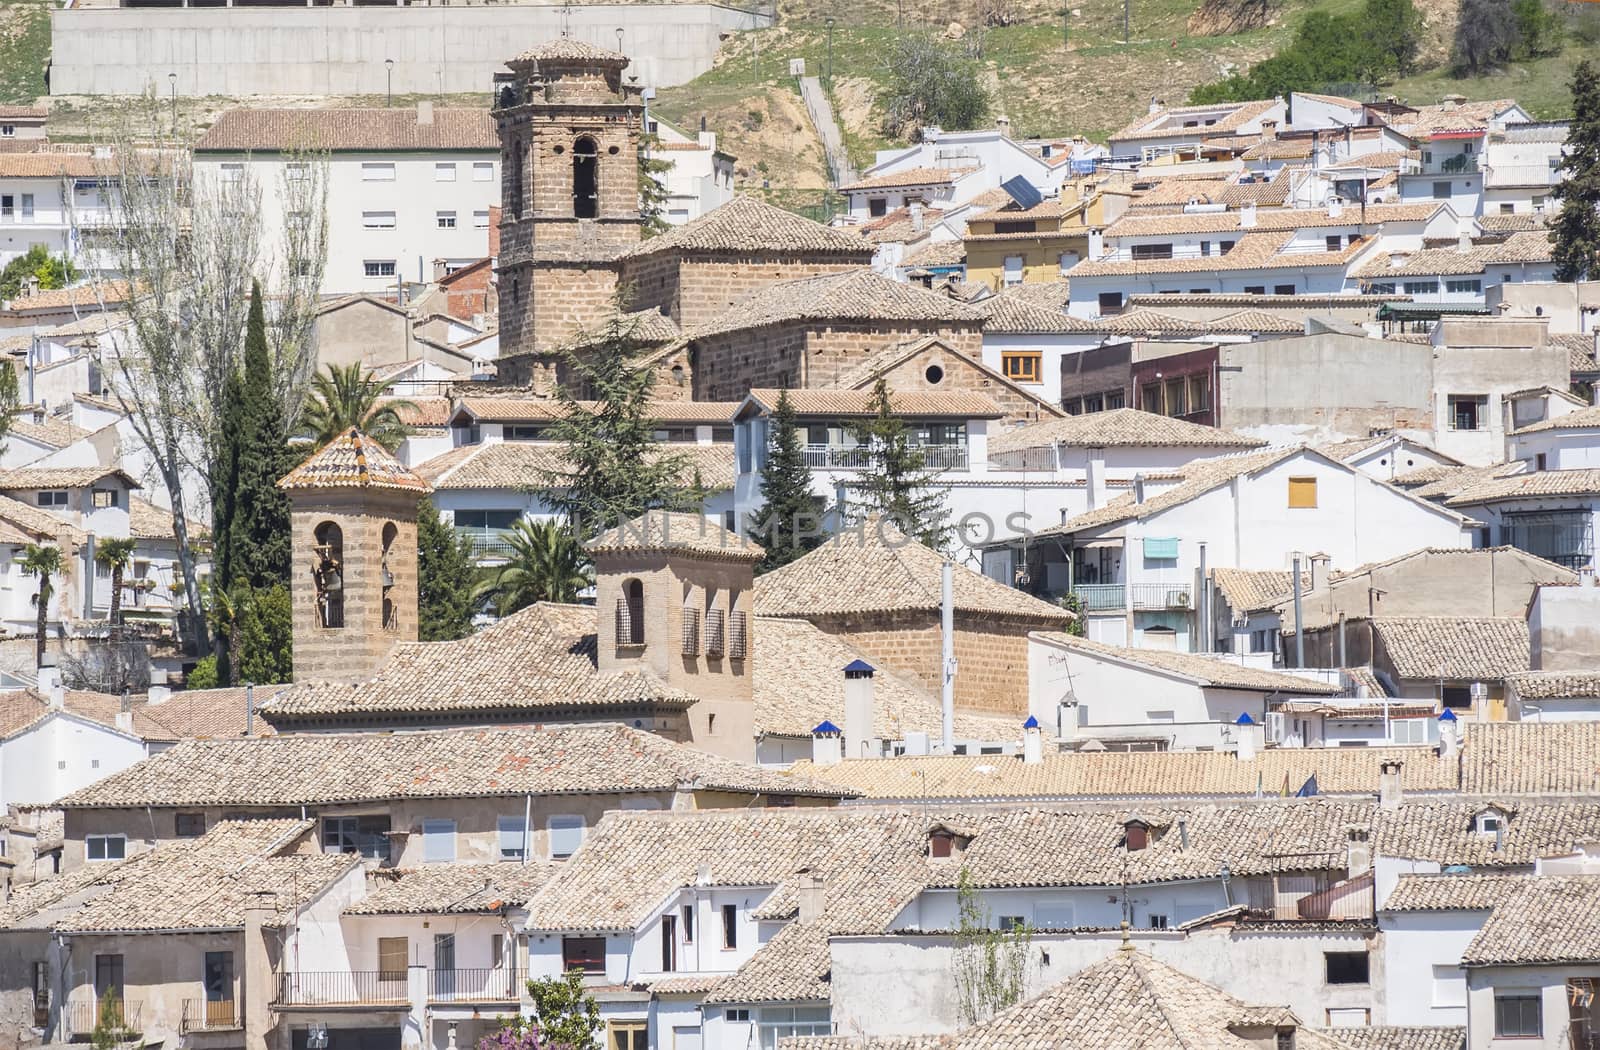 Carmen and San Jose churches in Cazorla, Jaen, Spain by max8xam